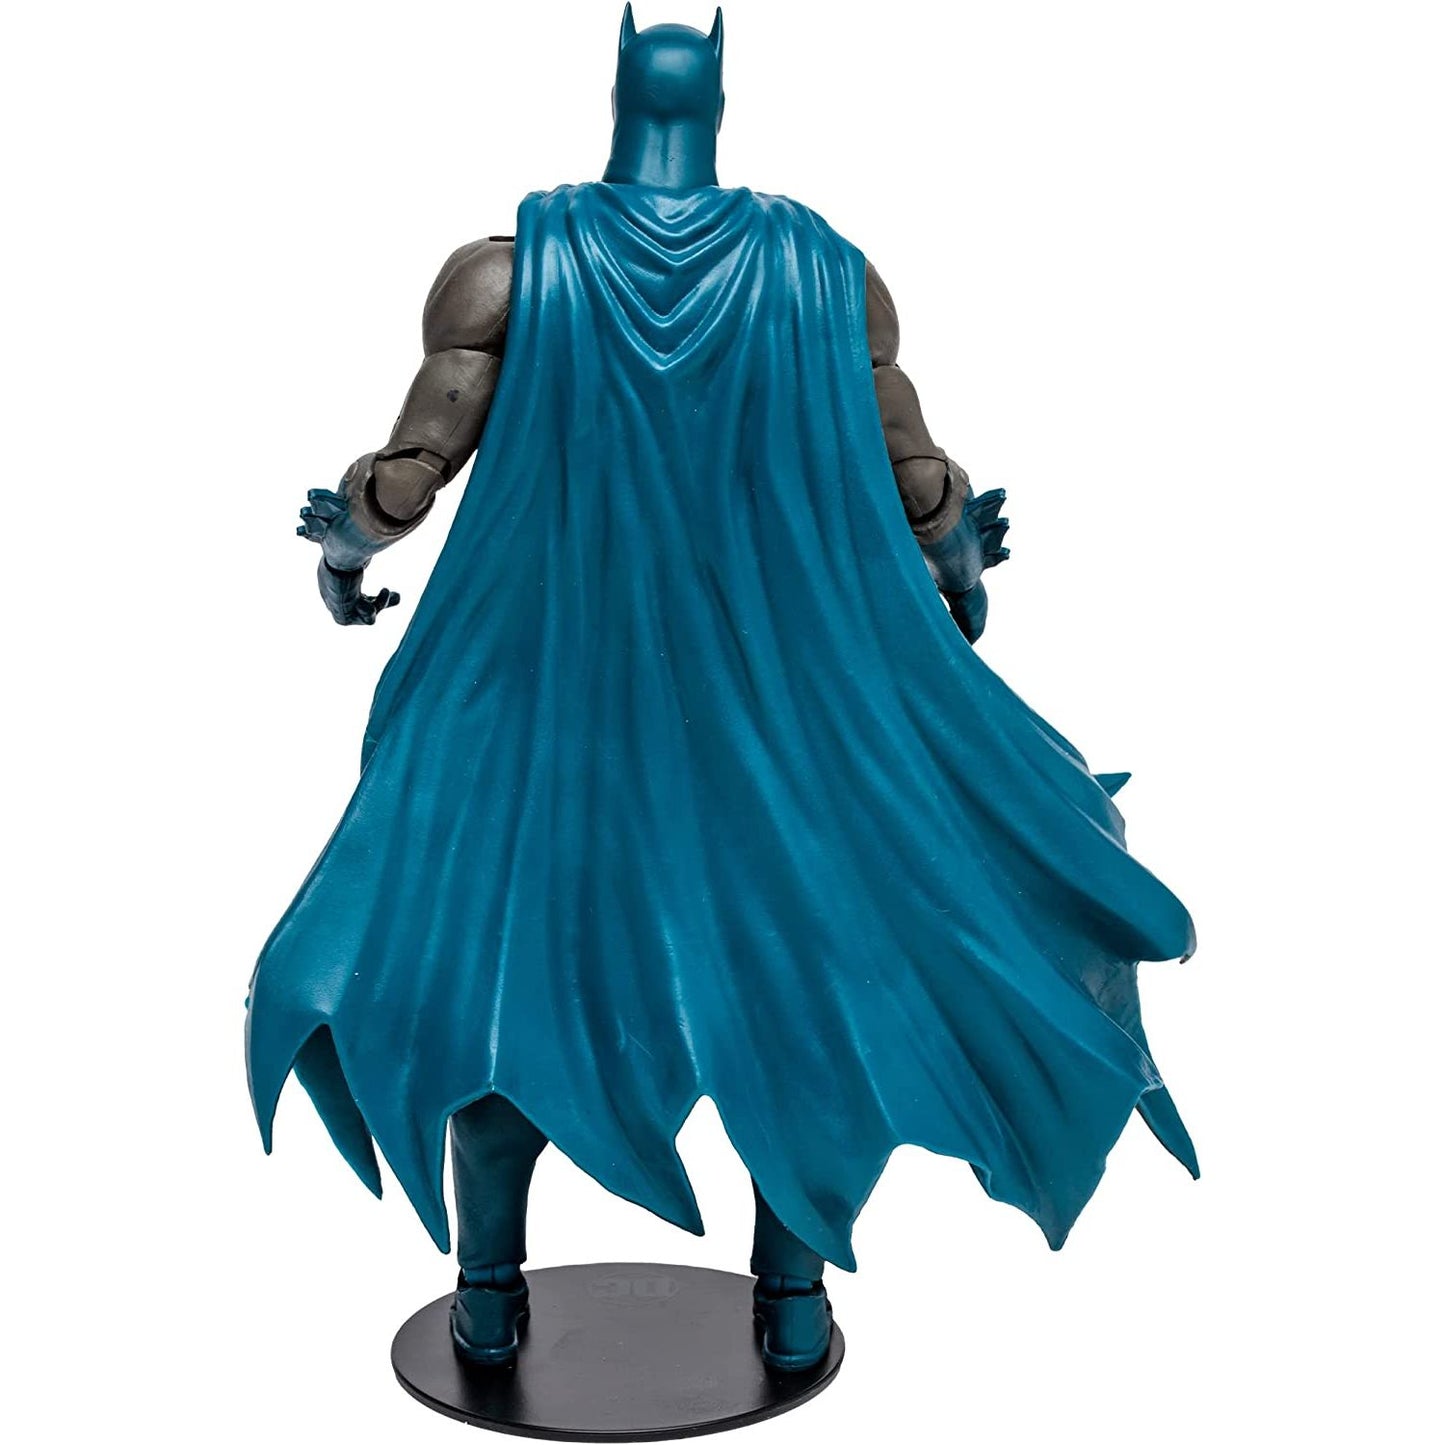  DC Multiverse Batman: Hush 7-Inch Scale Action Figure